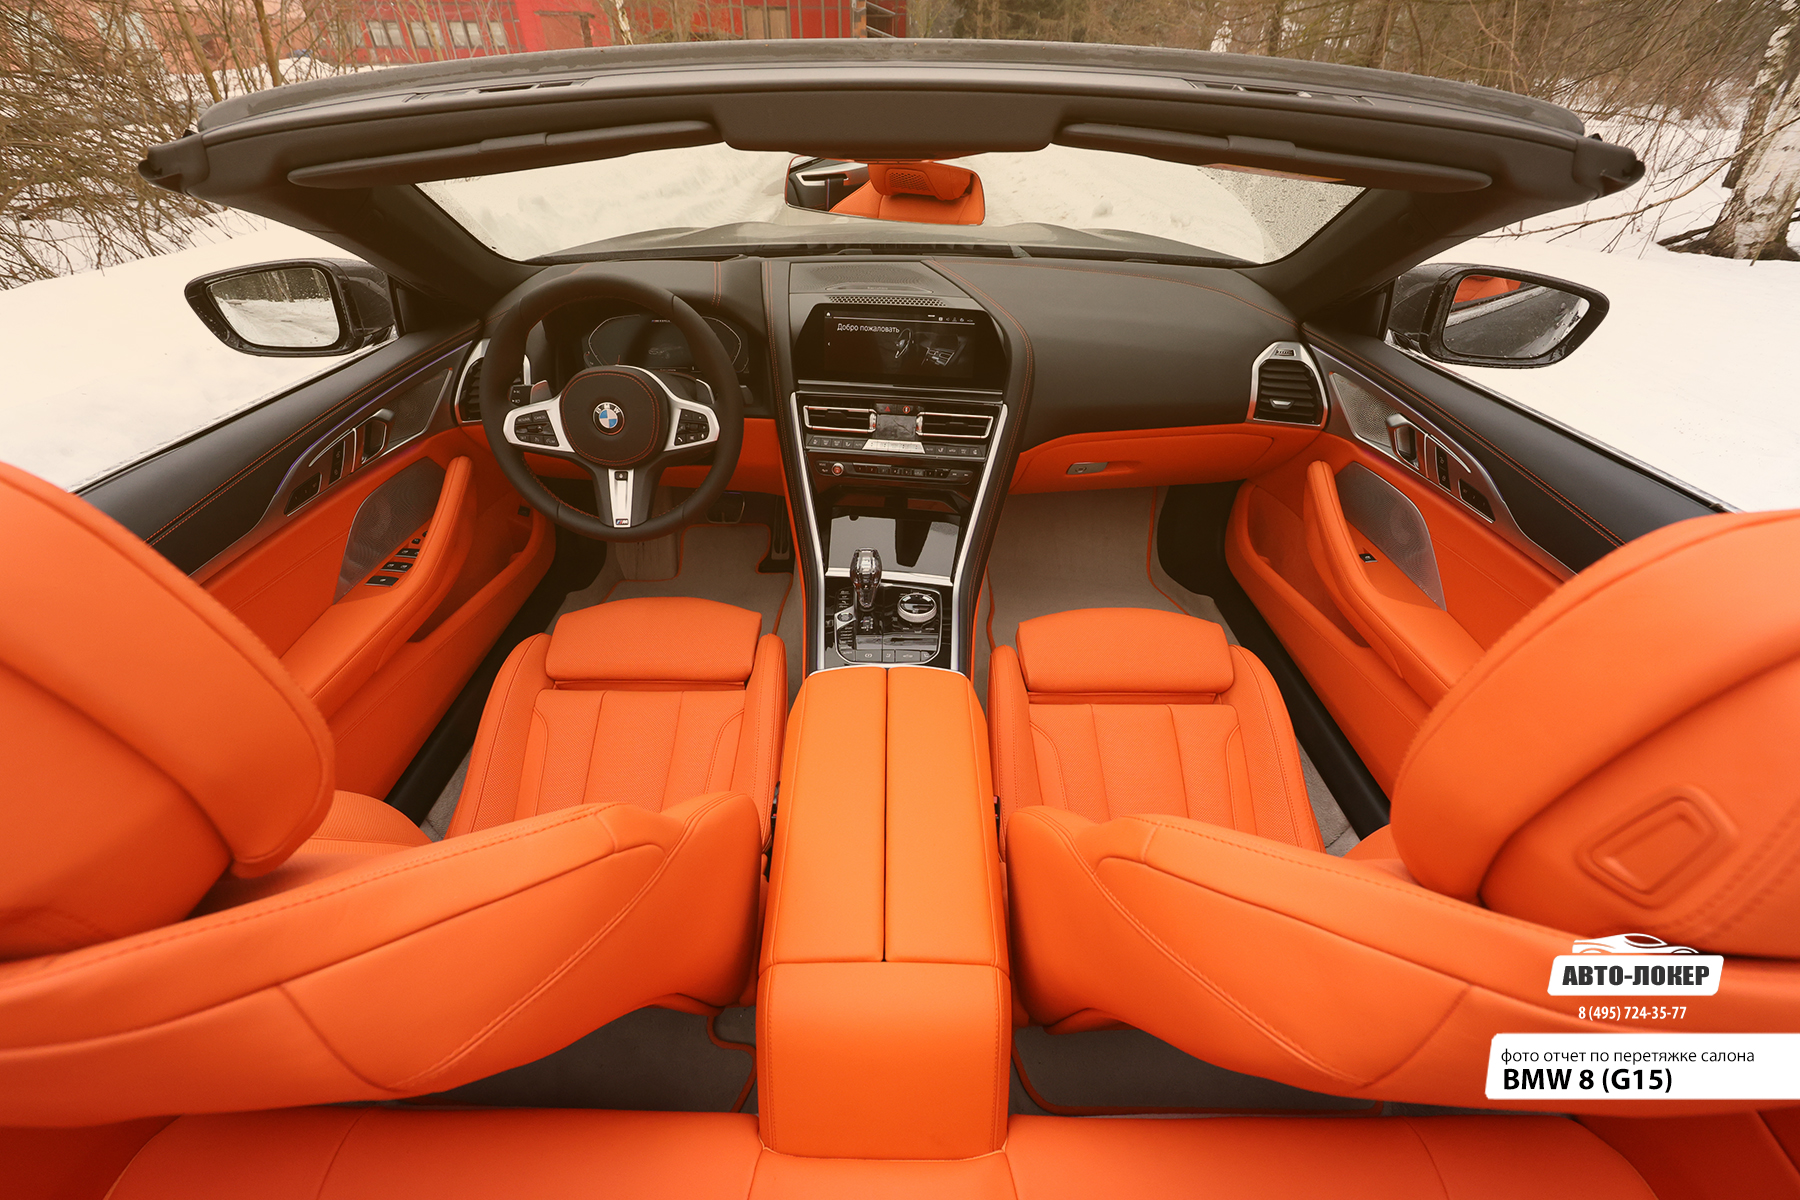 Перетяжка передних сидений и торпедо салона кожей BMW 8 (G15)